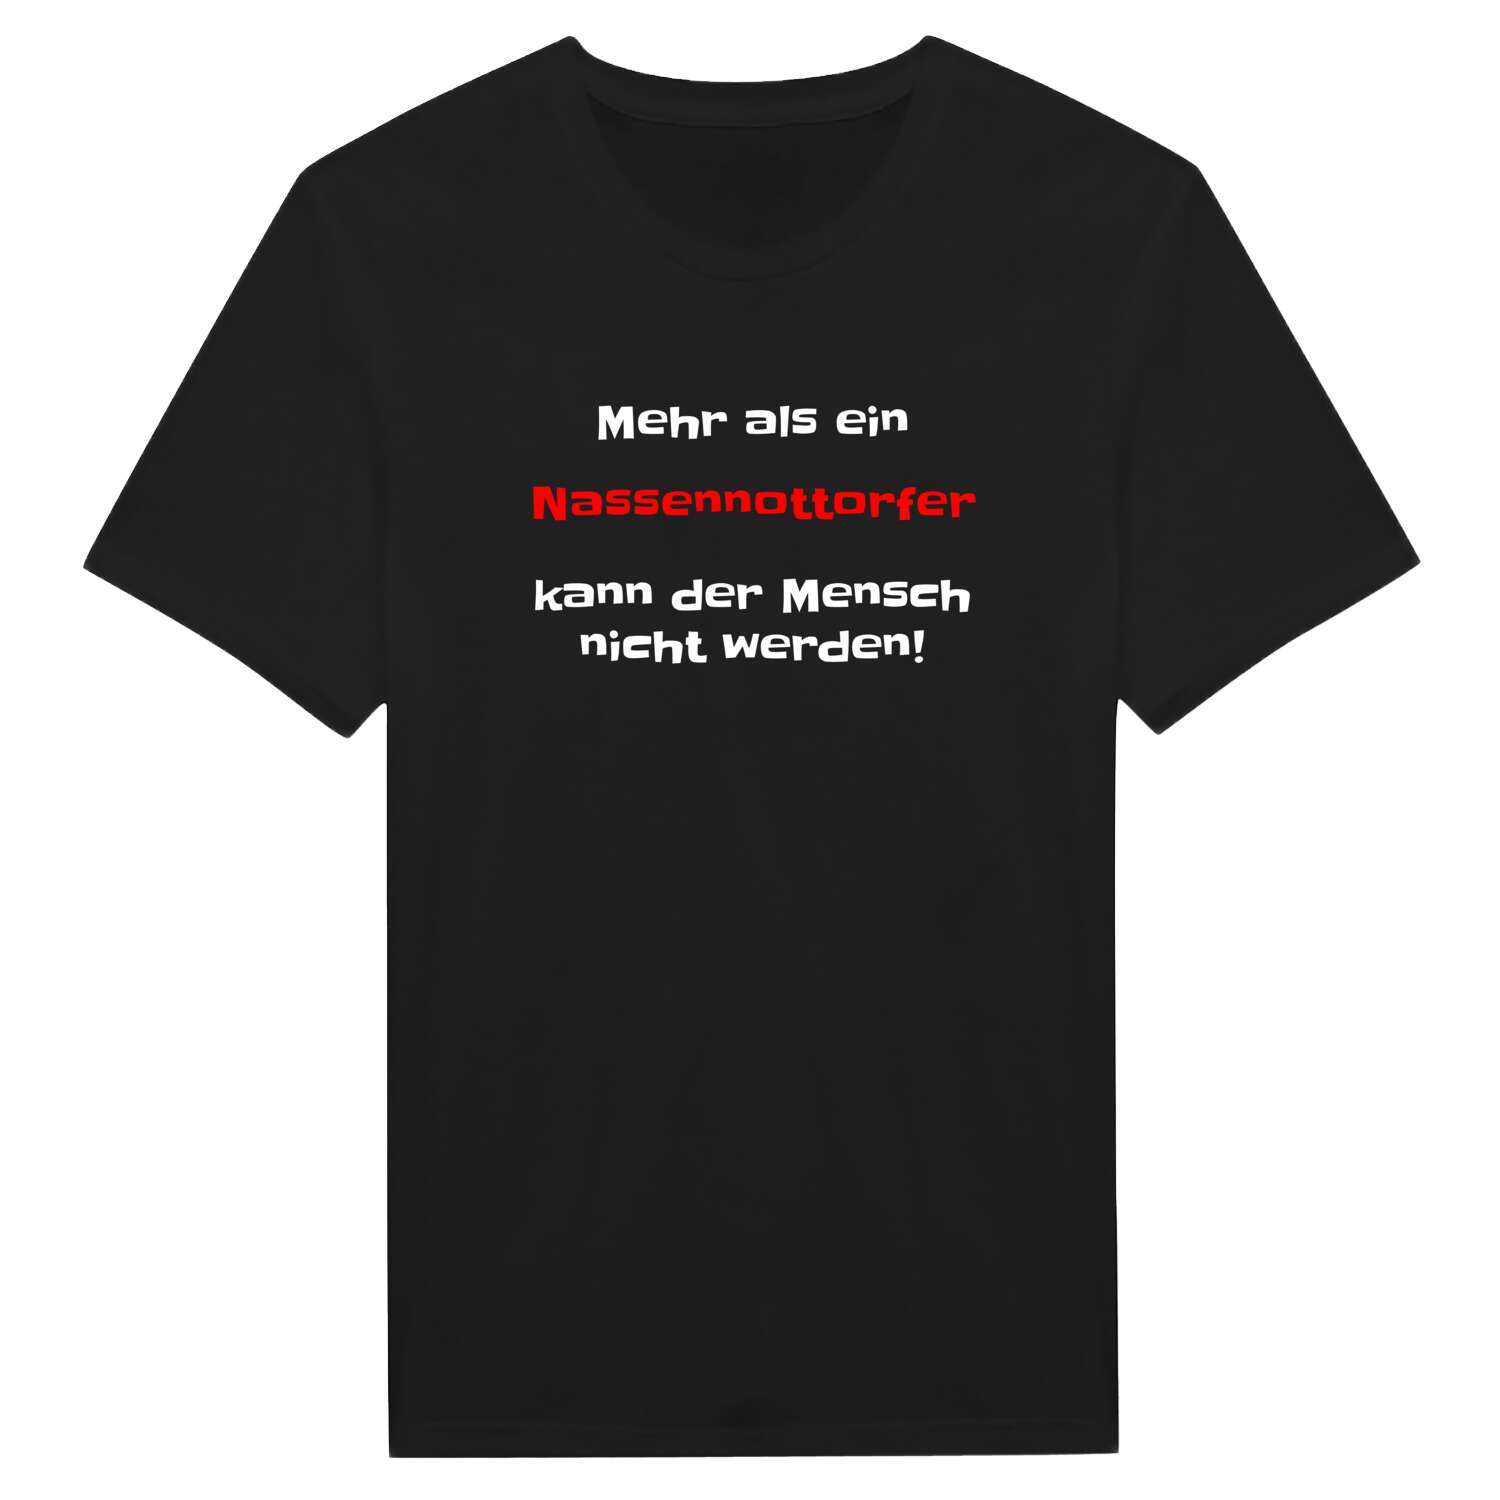 Nassennottorf T-Shirt »Mehr als ein«